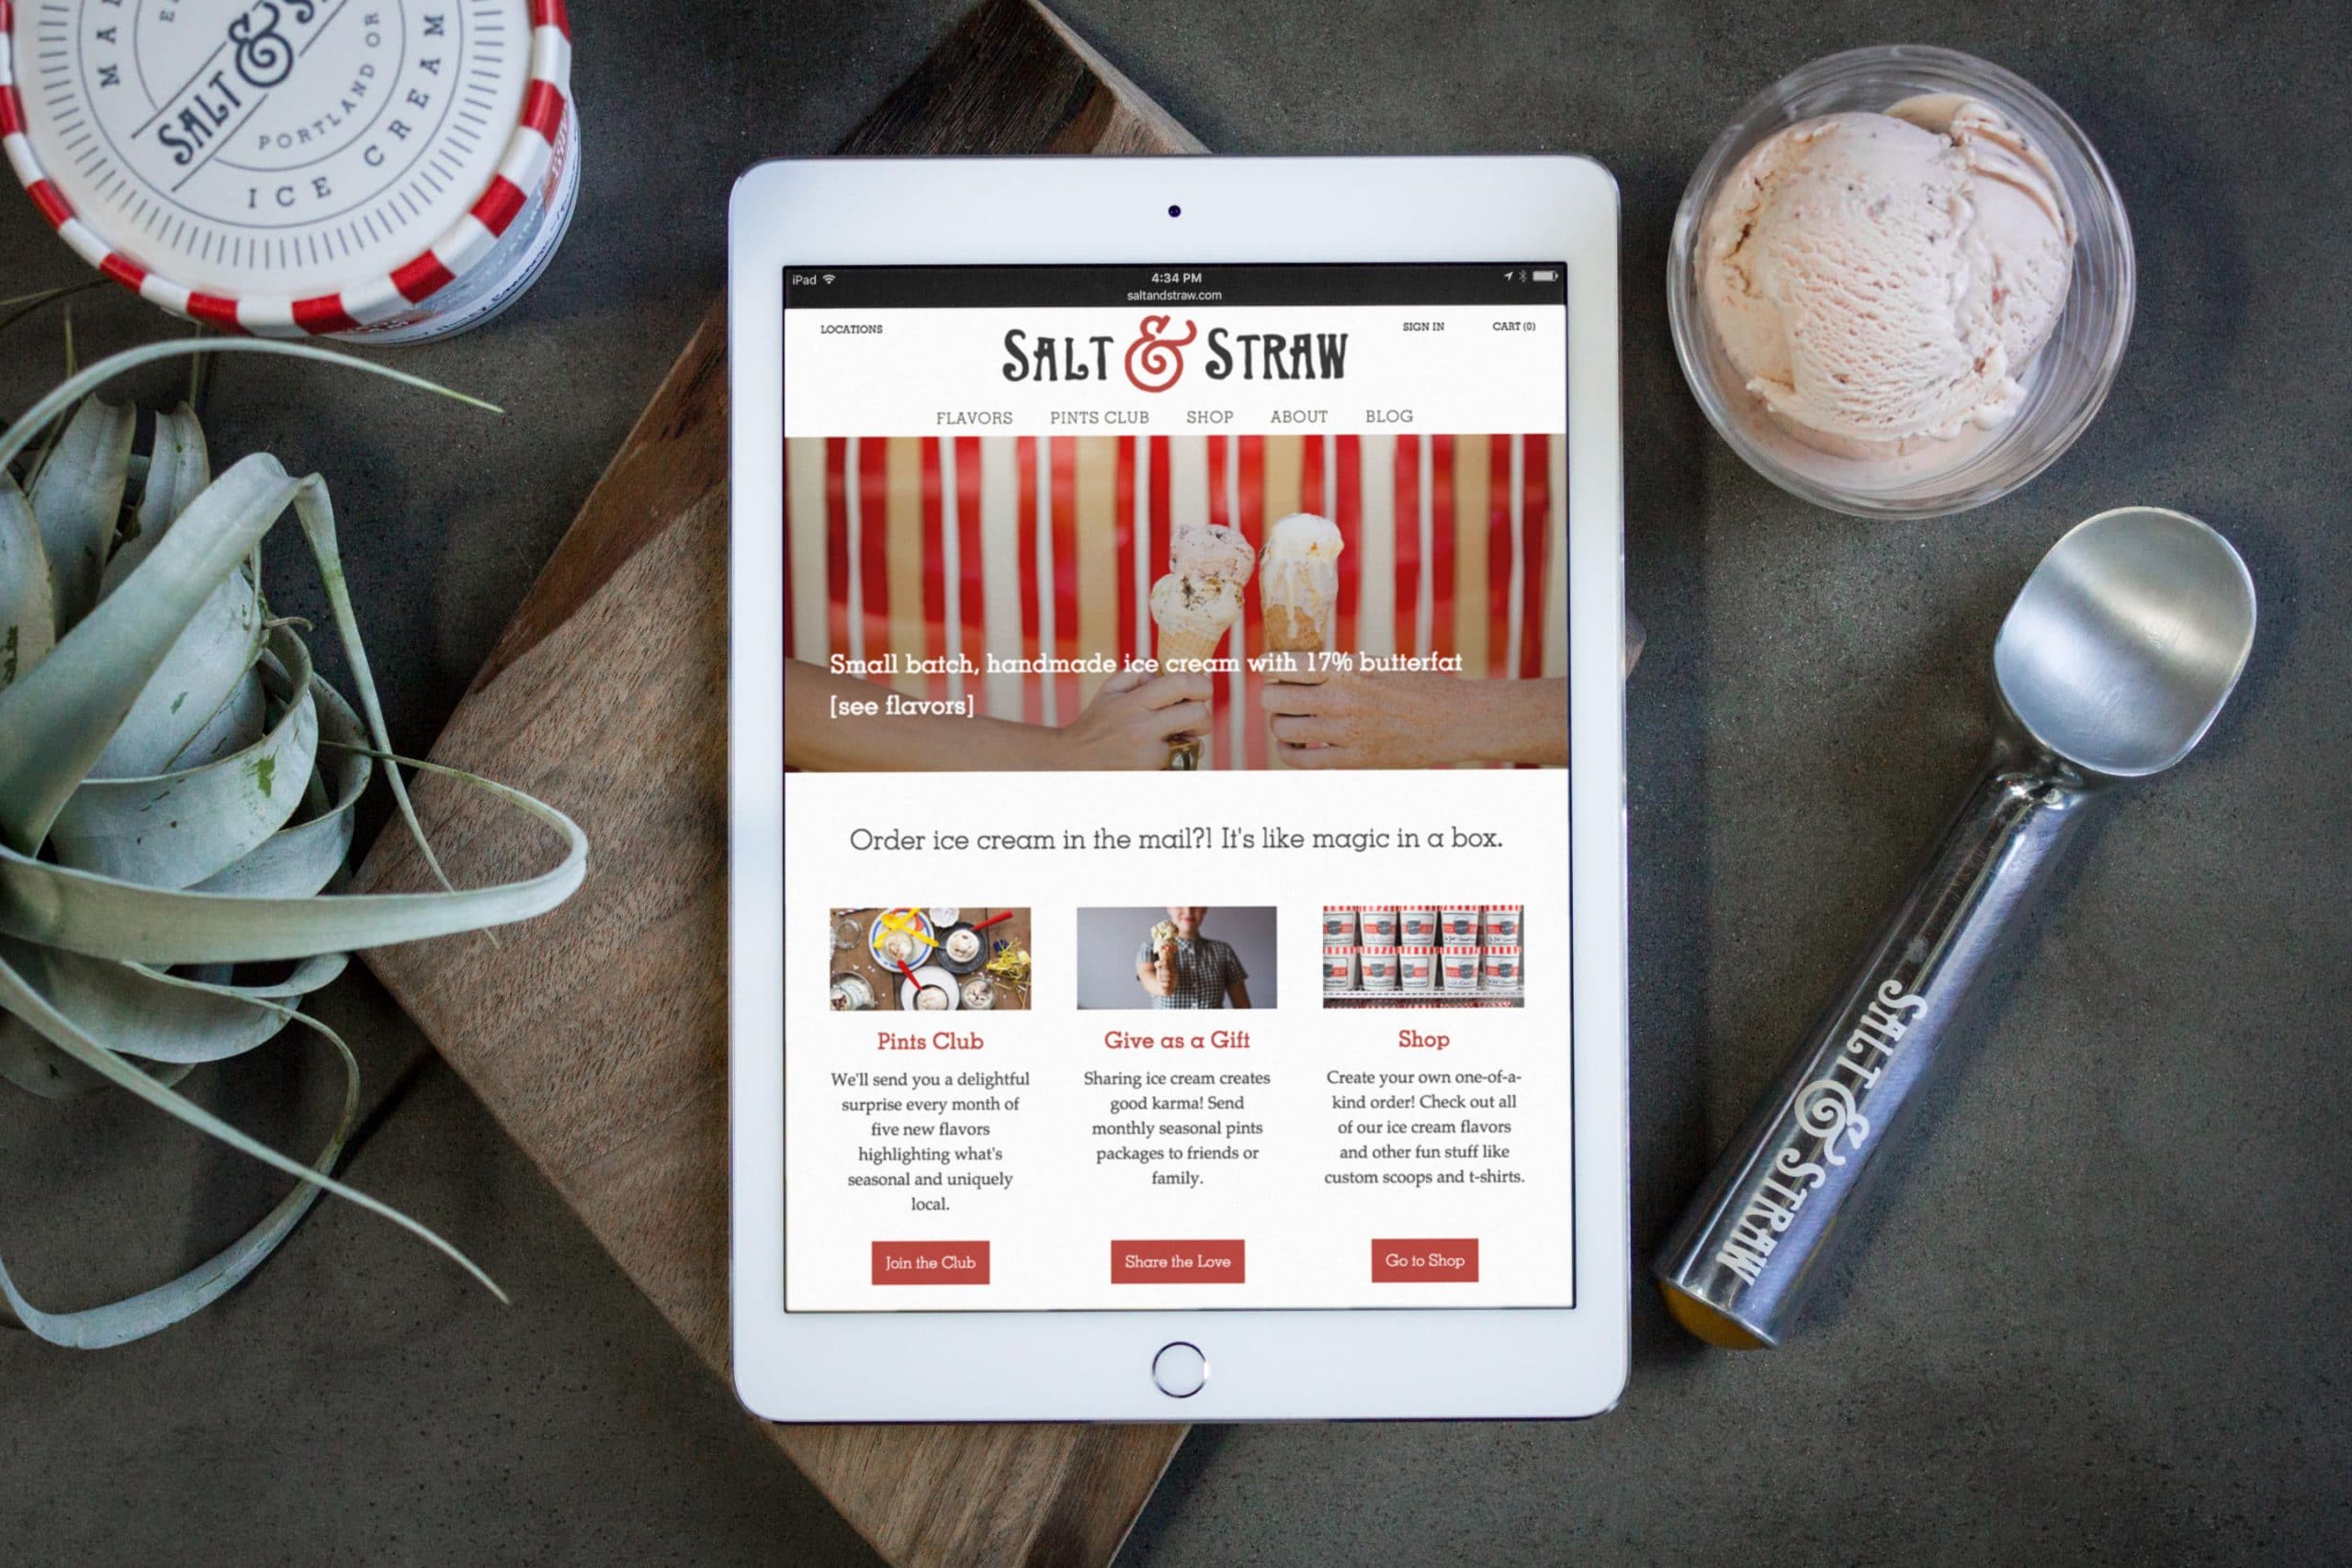 Salt & Straw website on iPad